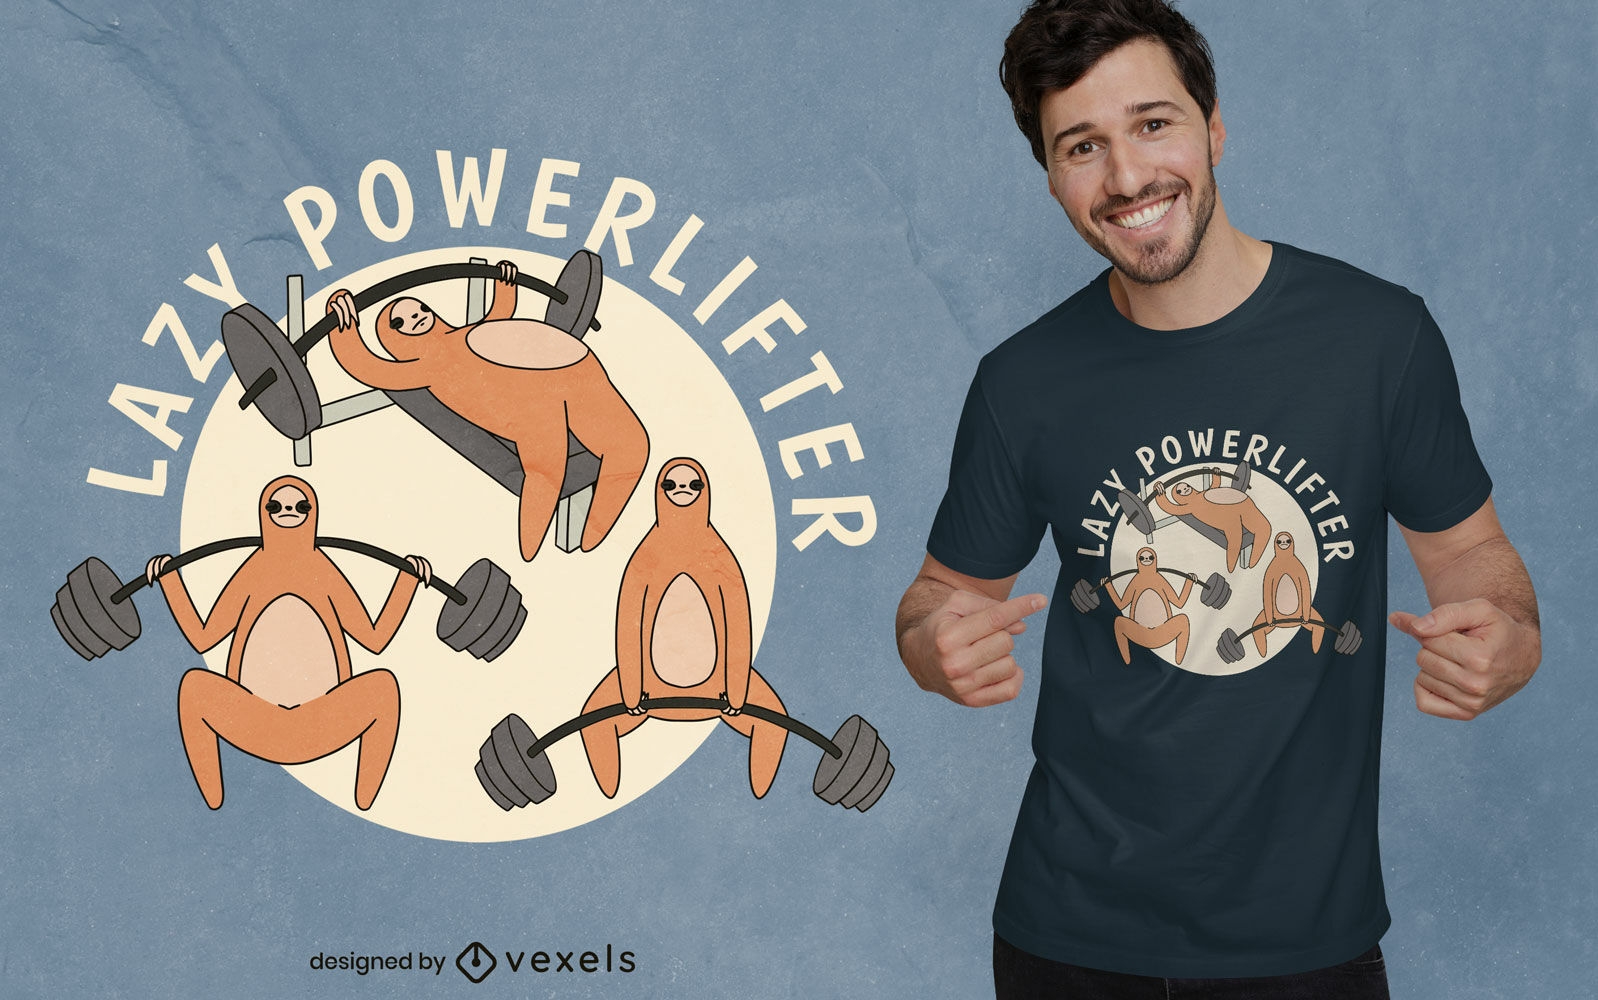 Sloth powerlifter cartoon t-shirt design